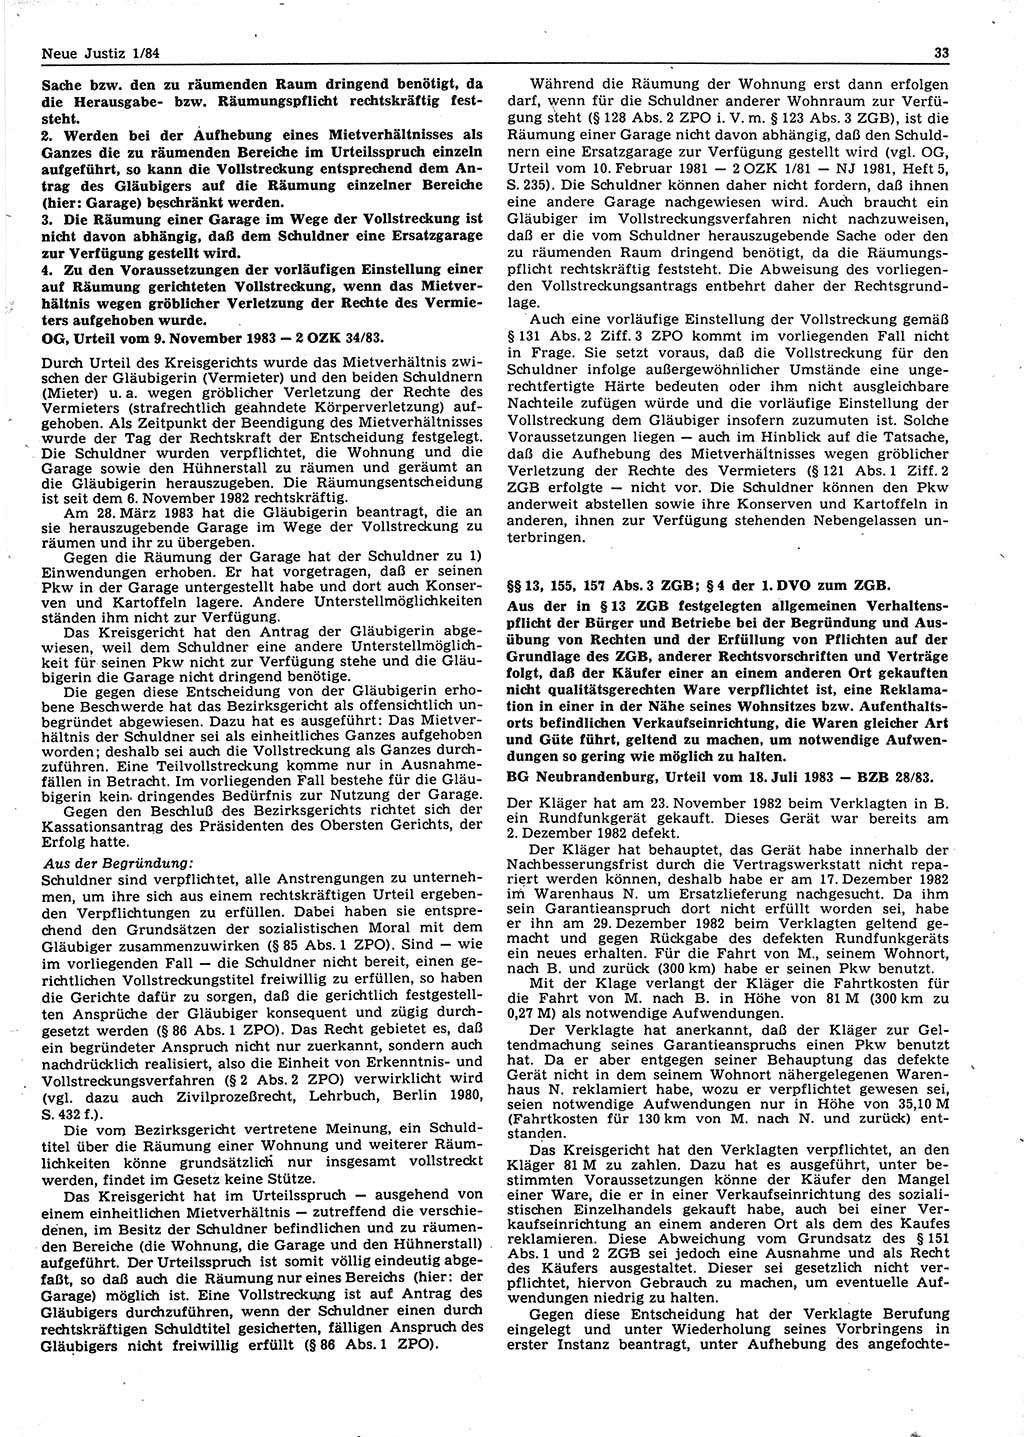 Neue Justiz (NJ), Zeitschrift für sozialistisches Recht und Gesetzlichkeit [Deutsche Demokratische Republik (DDR)], 38. Jahrgang 1984, Seite 33 (NJ DDR 1984, S. 33)